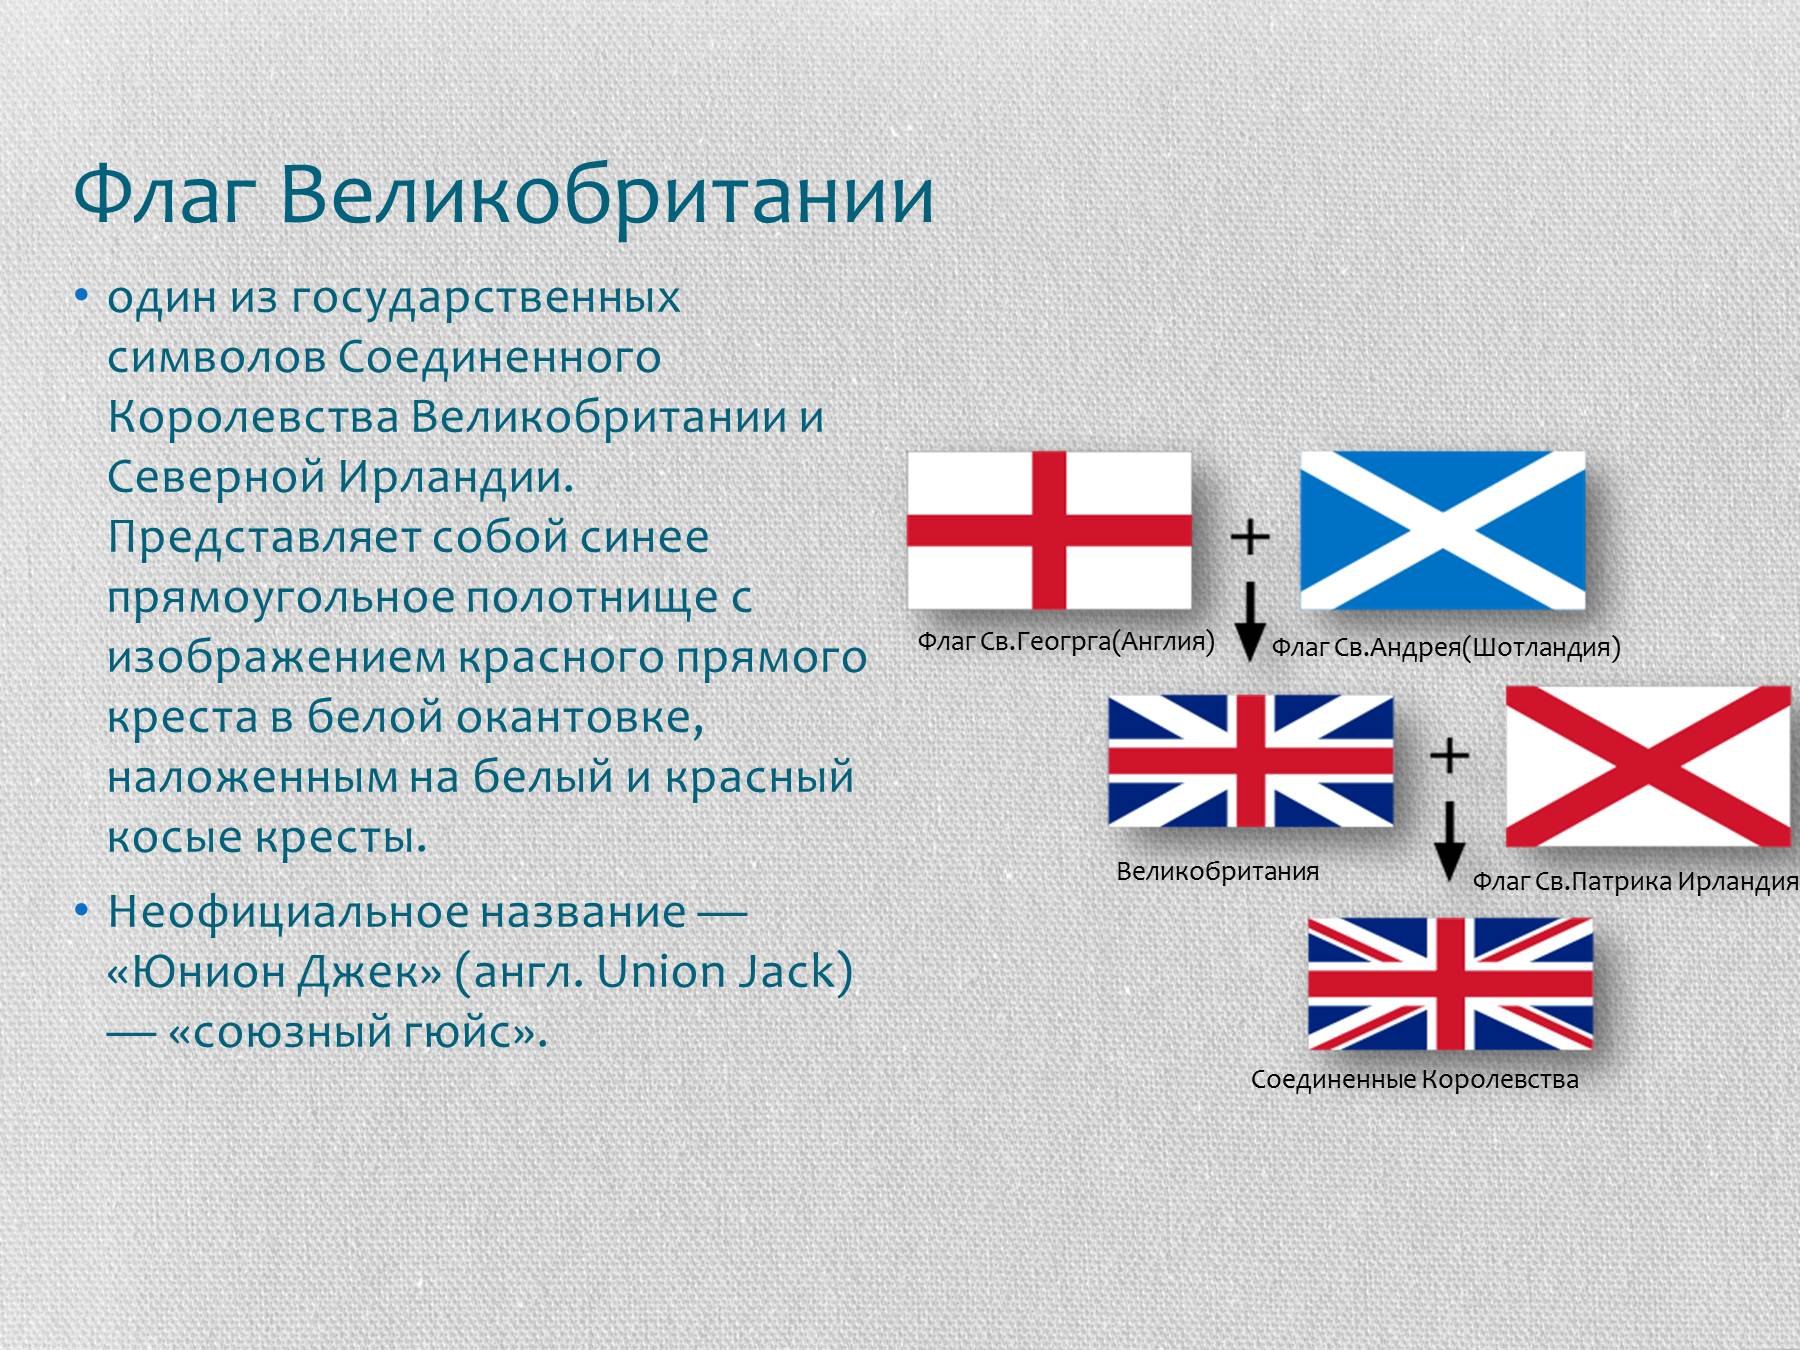 Почему флаг англии. Флаг объединенного королевства Великобритании и Северной Ирландии. Соединенное королевство Северной Ирландии флаг. История флага Великобритании. Флаг соединённого королевства Великобритании и Северной ирландииш.